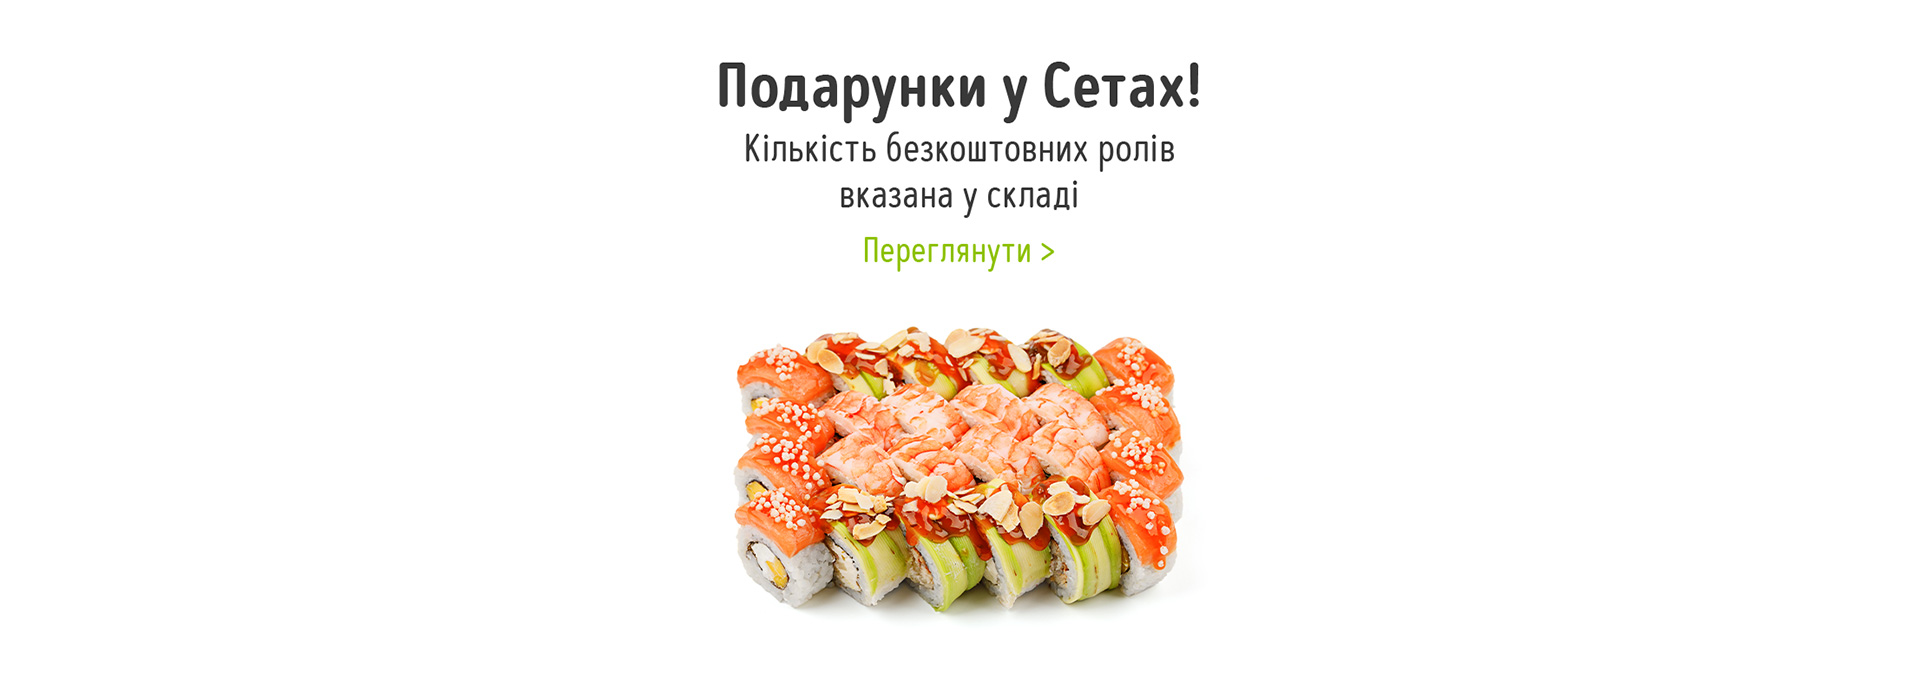 замовити набор суши со скидкой